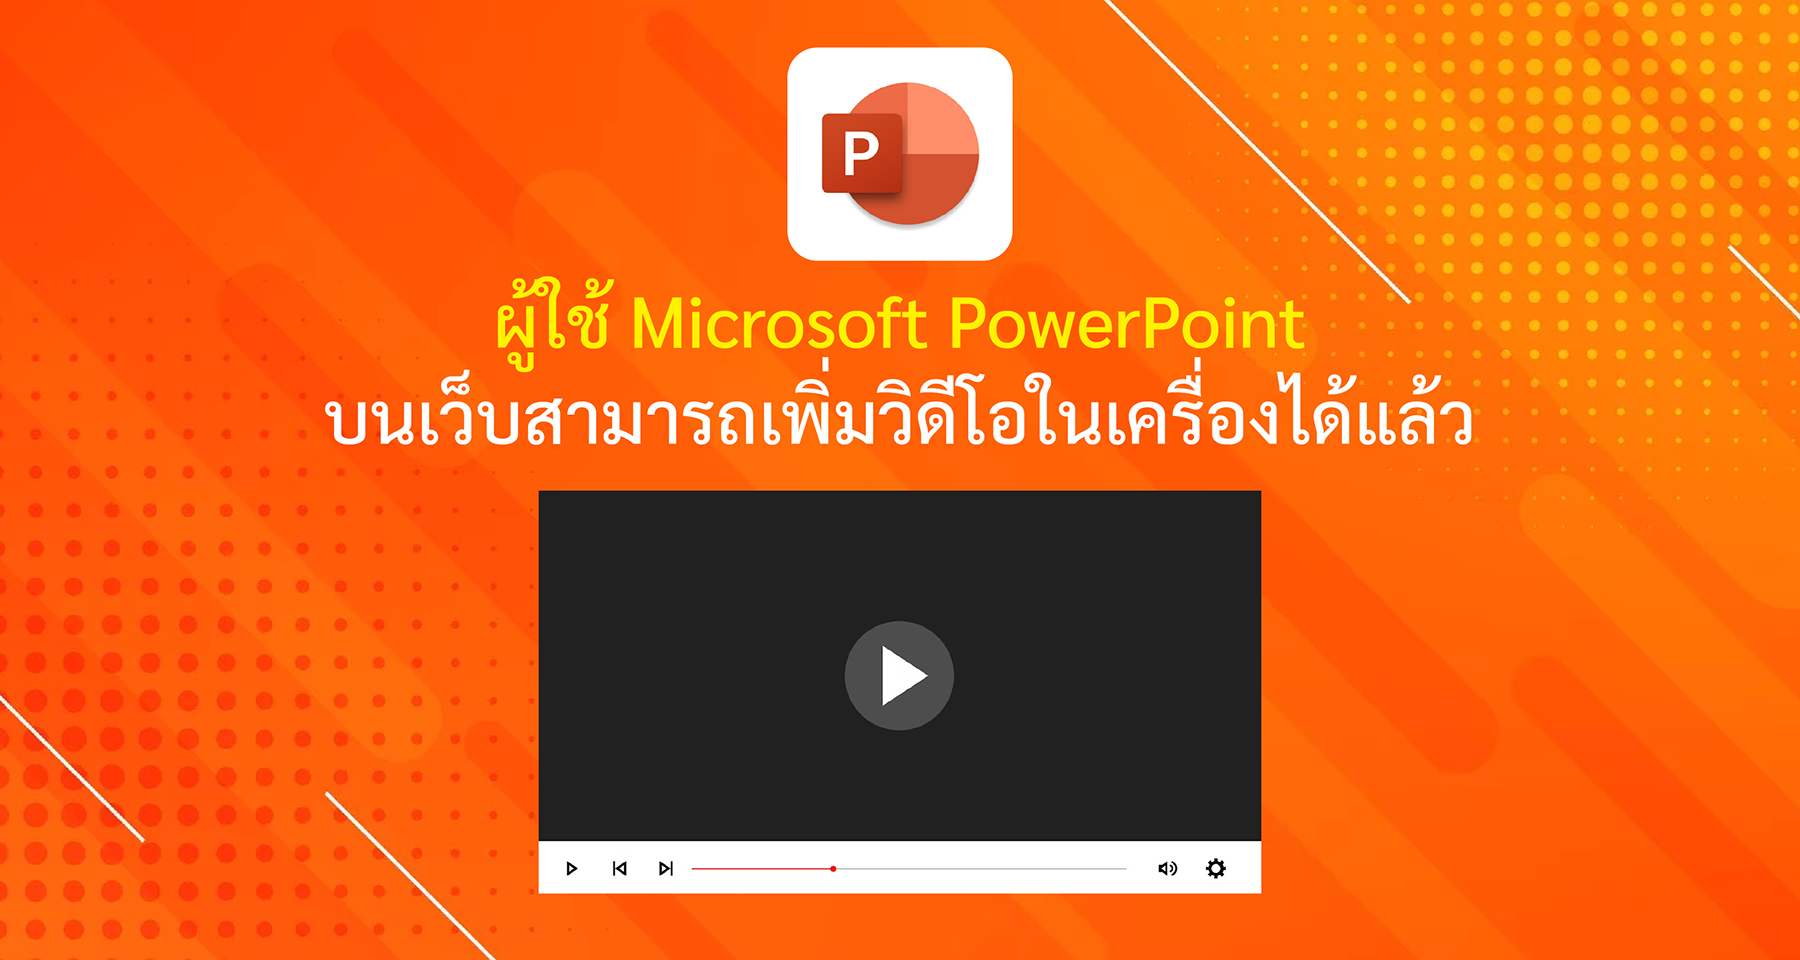 ผู้ใช้ Microsoft PowerPoint บนเว็บสามารถเพิ่มวิดีโอในเครื่องได้แล้ว